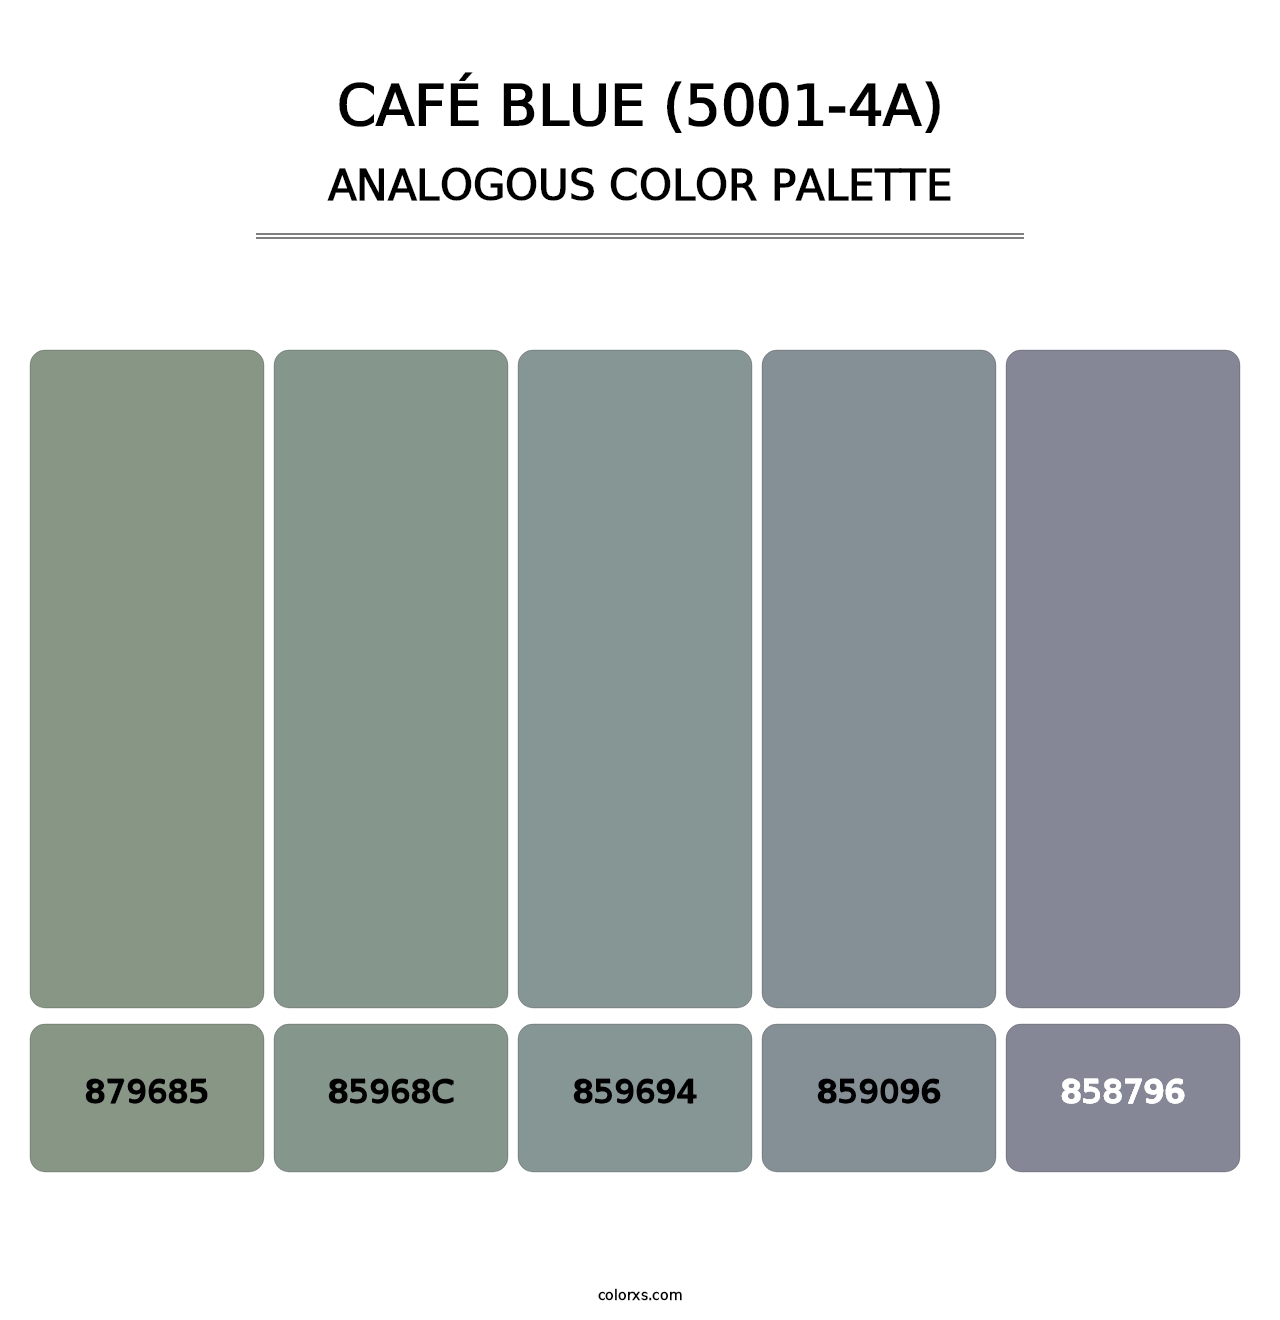 Café Blue (5001-4A) - Analogous Color Palette